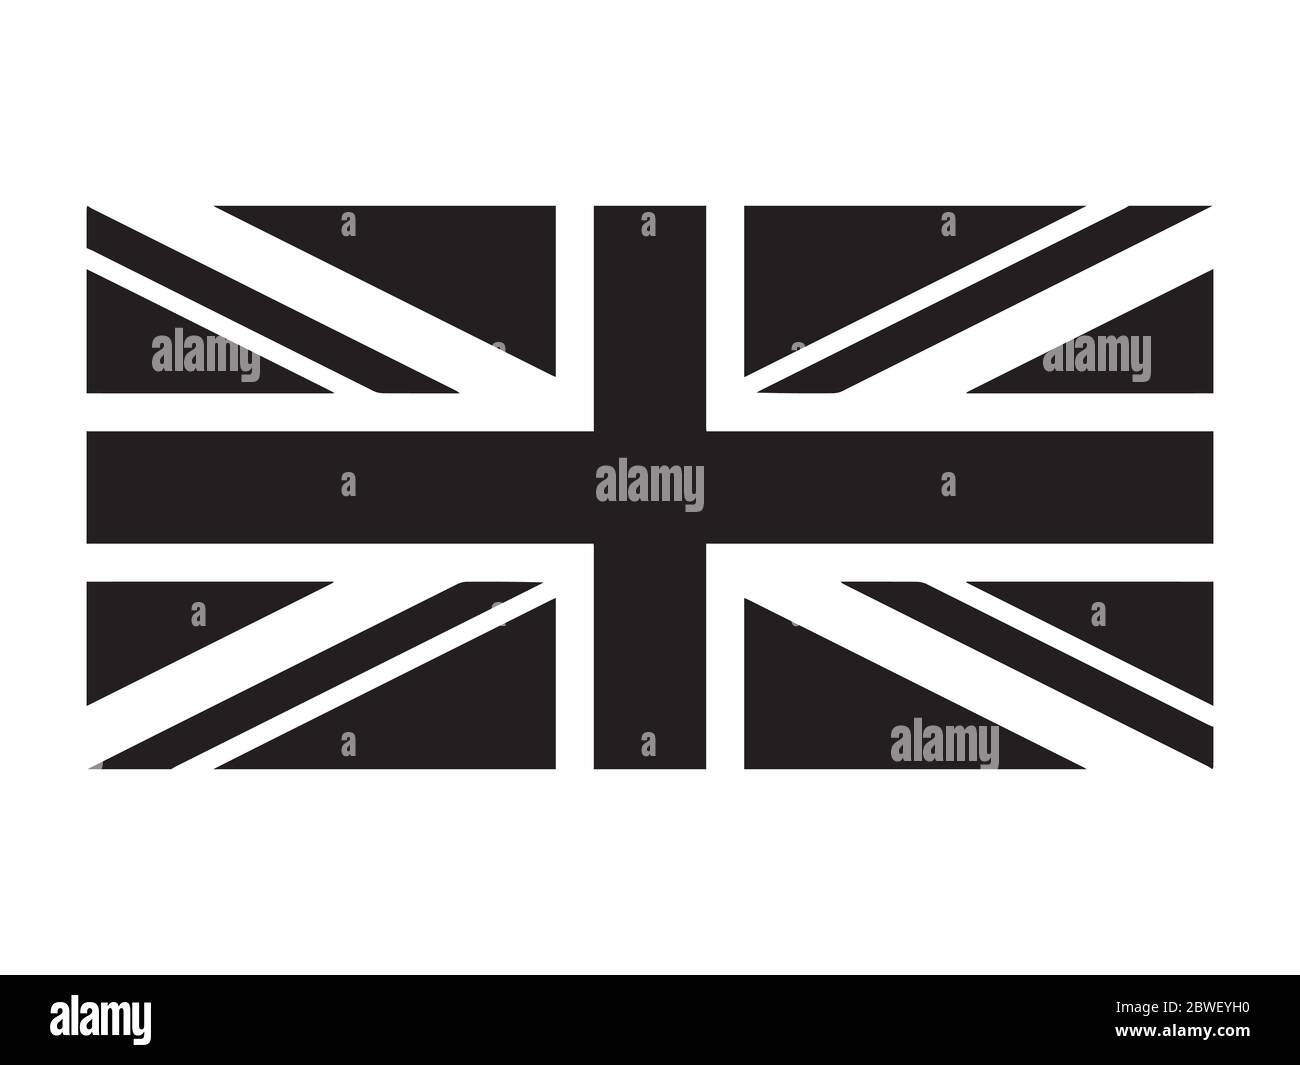 Großbritannien Flagge Union Jack. UK Flagge Schwarz und Weiß. Banner Mit Landeszeichen. EPS-Vektordatei für Schwarzweiß-Graustufen. Stock Vektor